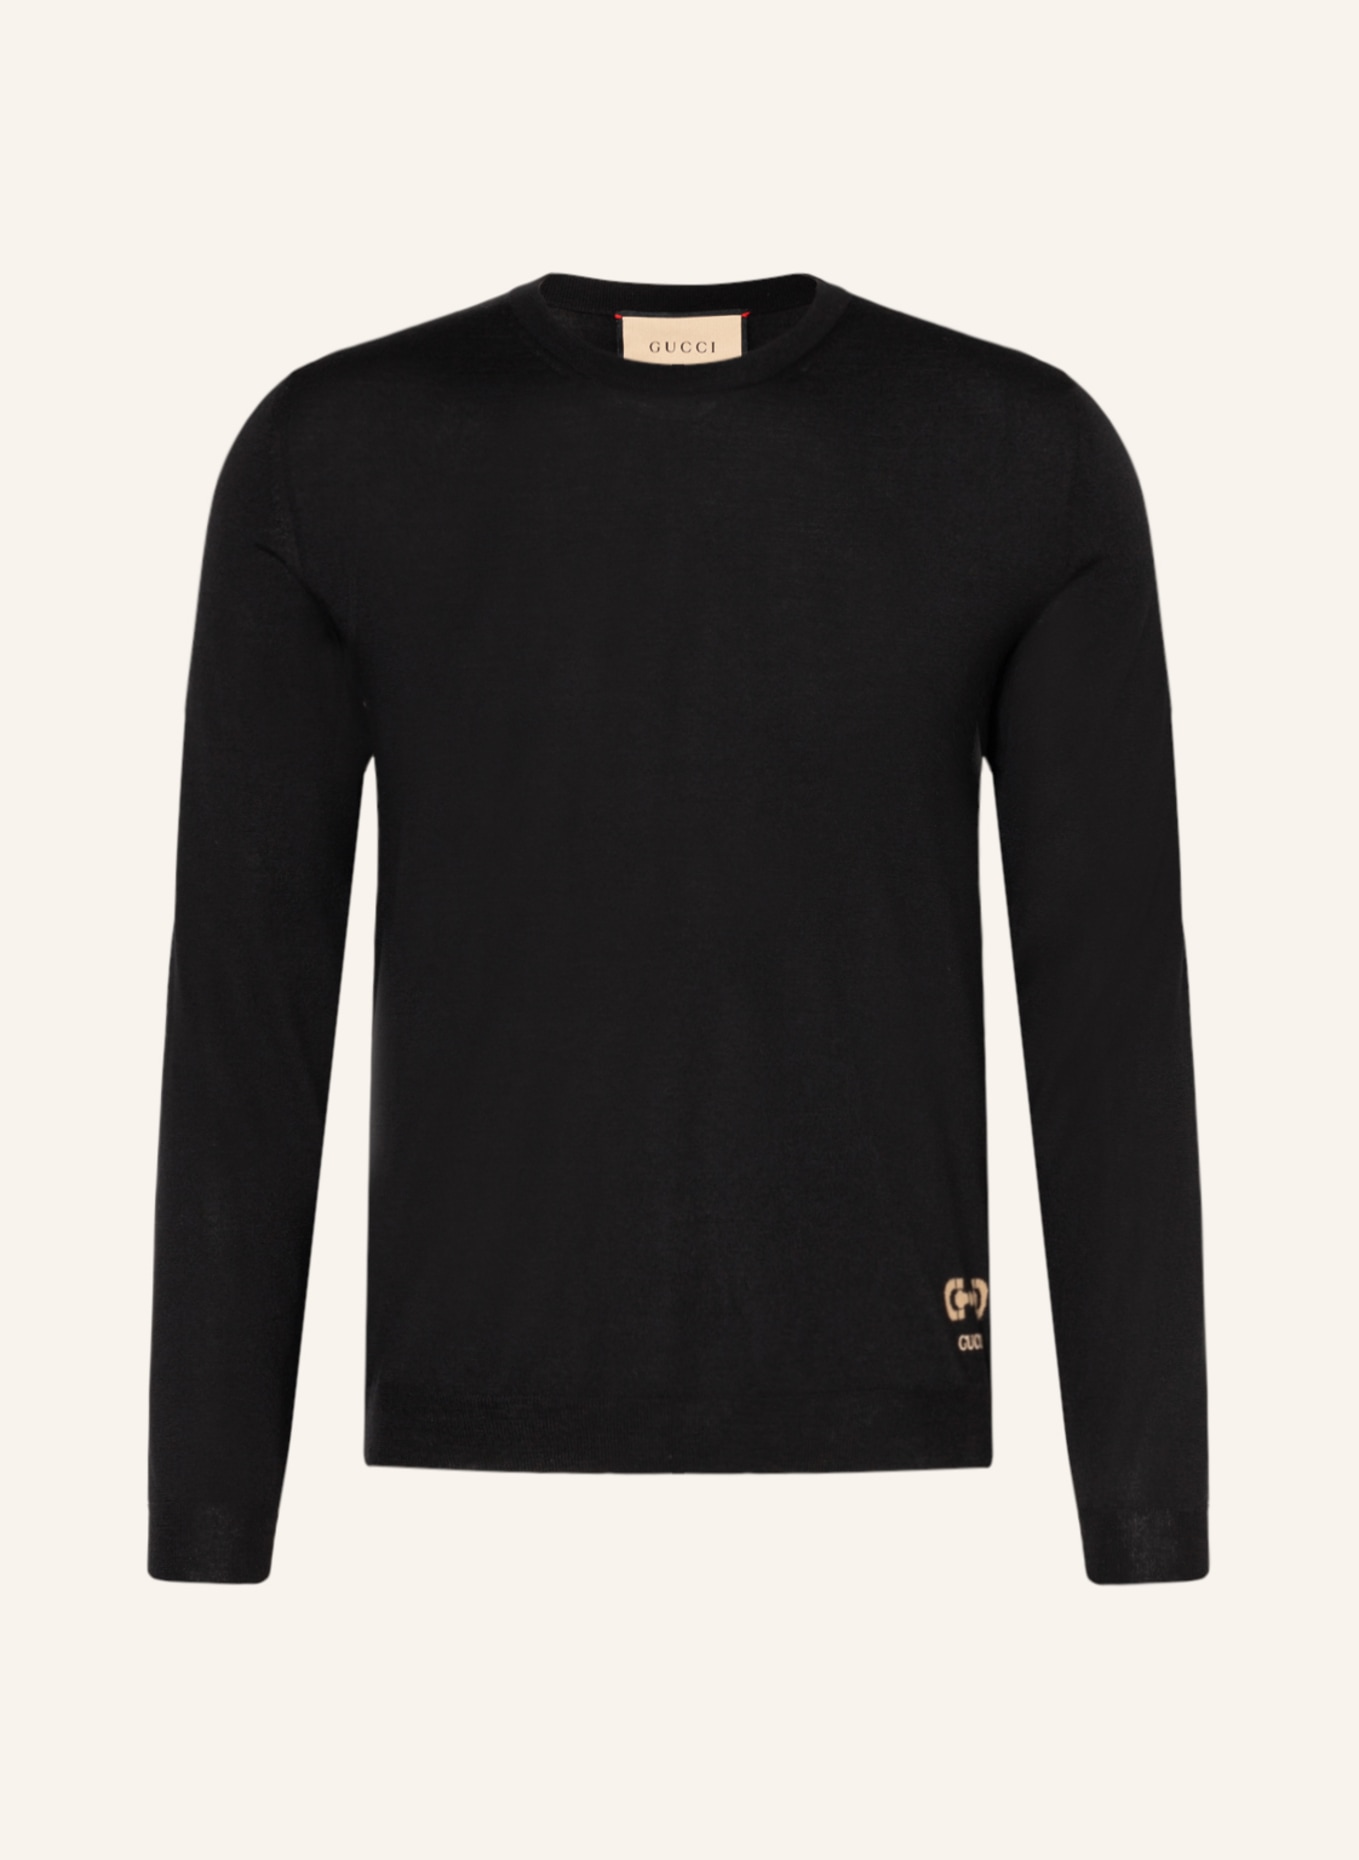 GUCCI Pullover, Farbe: 1000 BLACK (Bild 1)